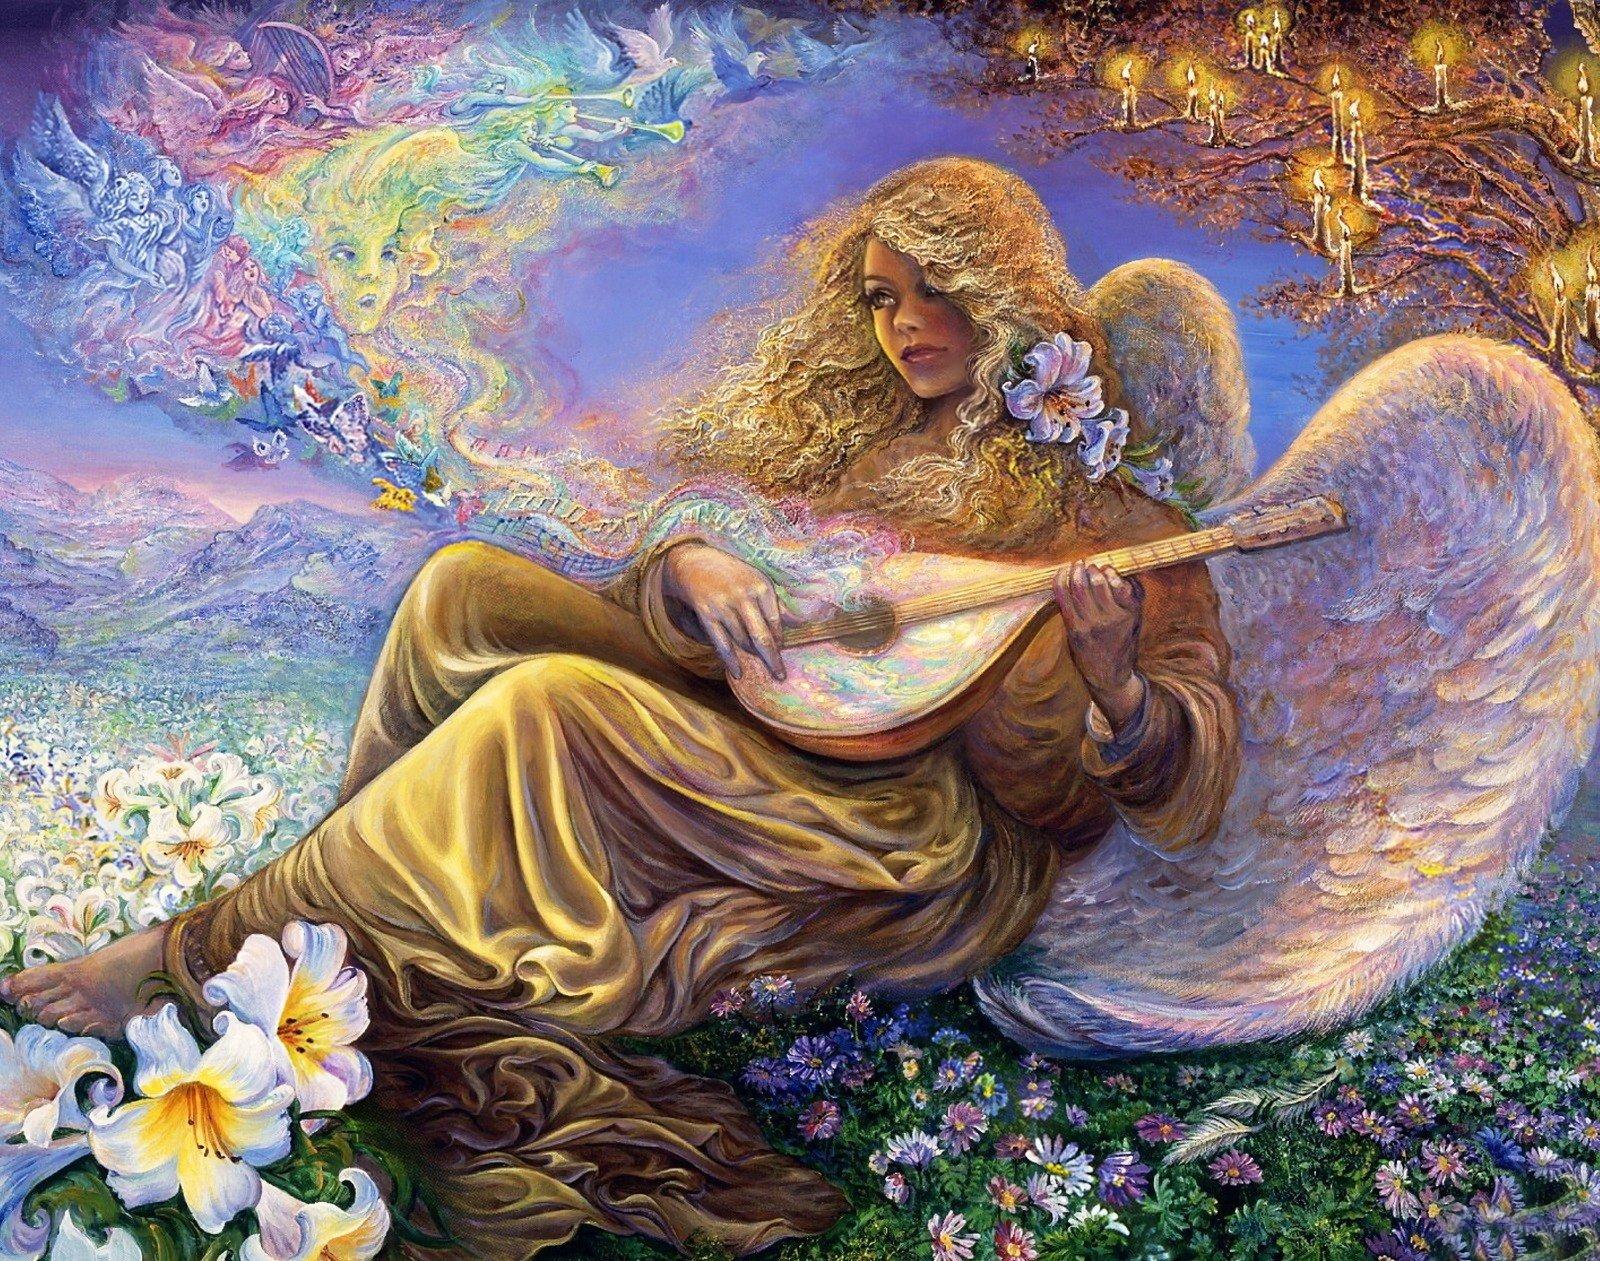 Angel playing Lute in Flower Field Wallpaper